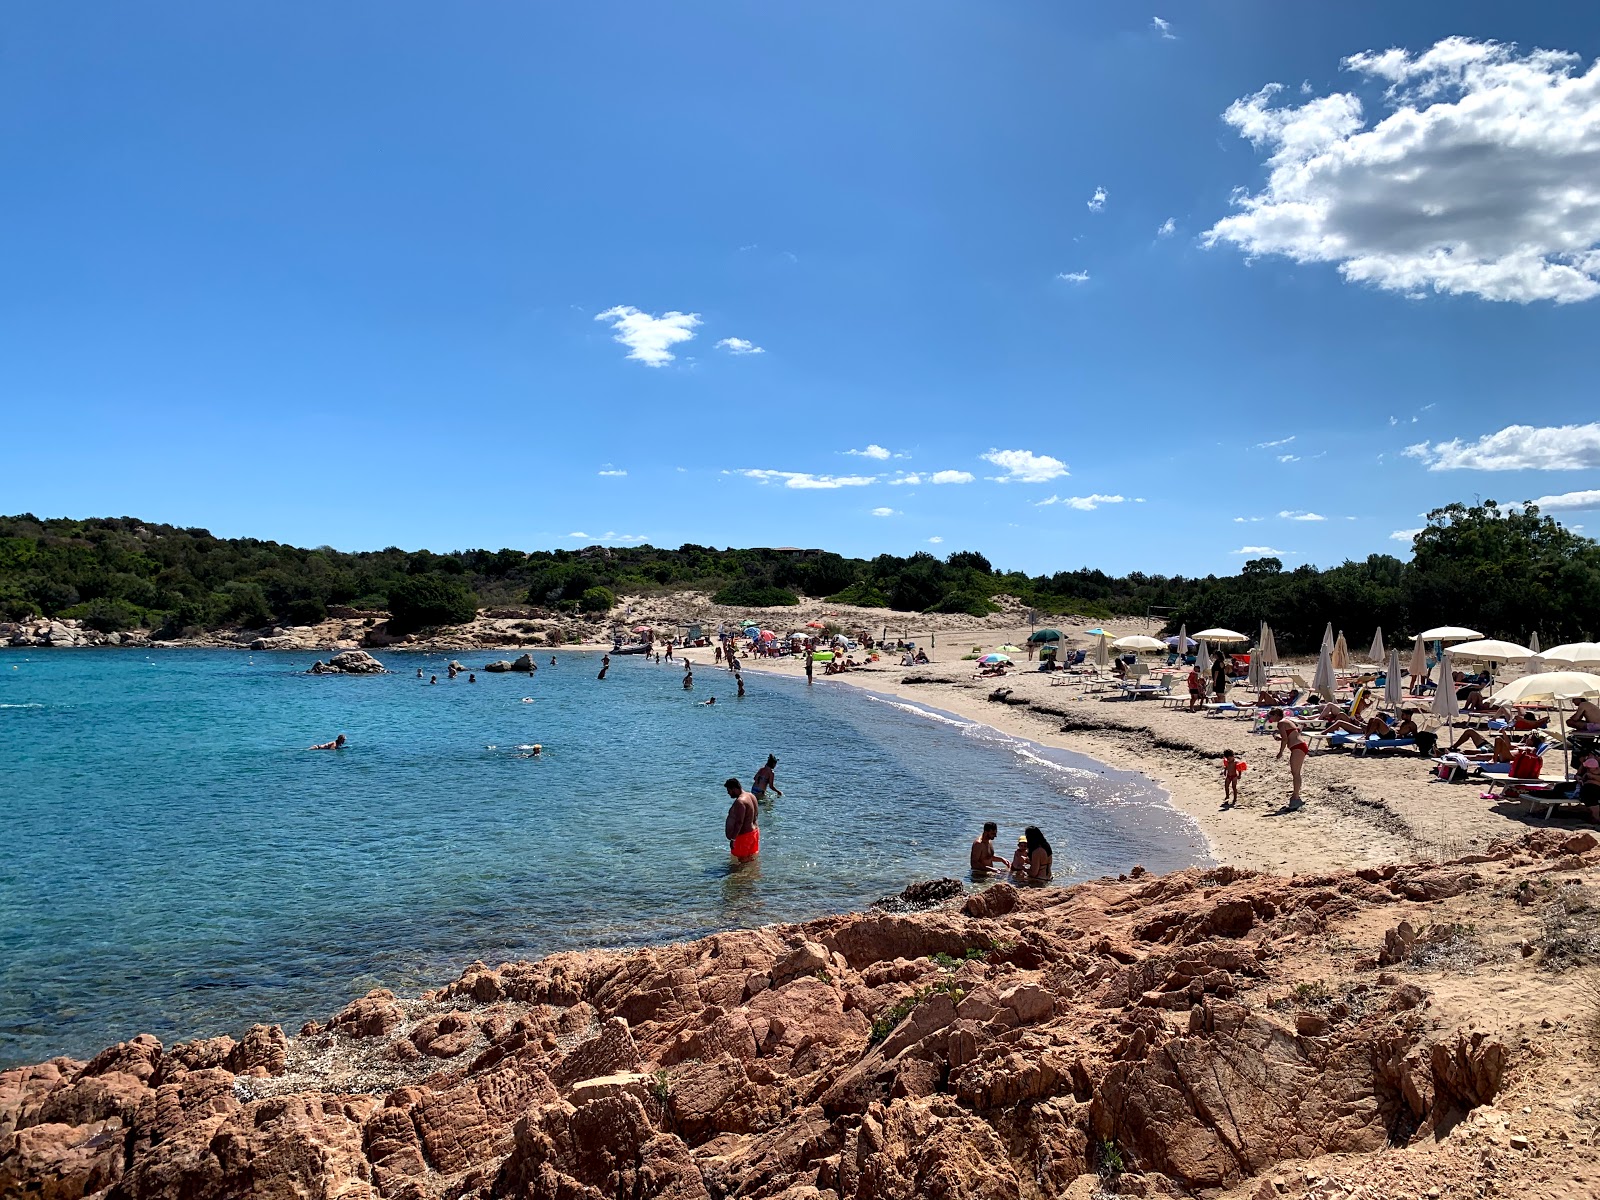 Photo of Spiaggia Grande Baia located in natural area